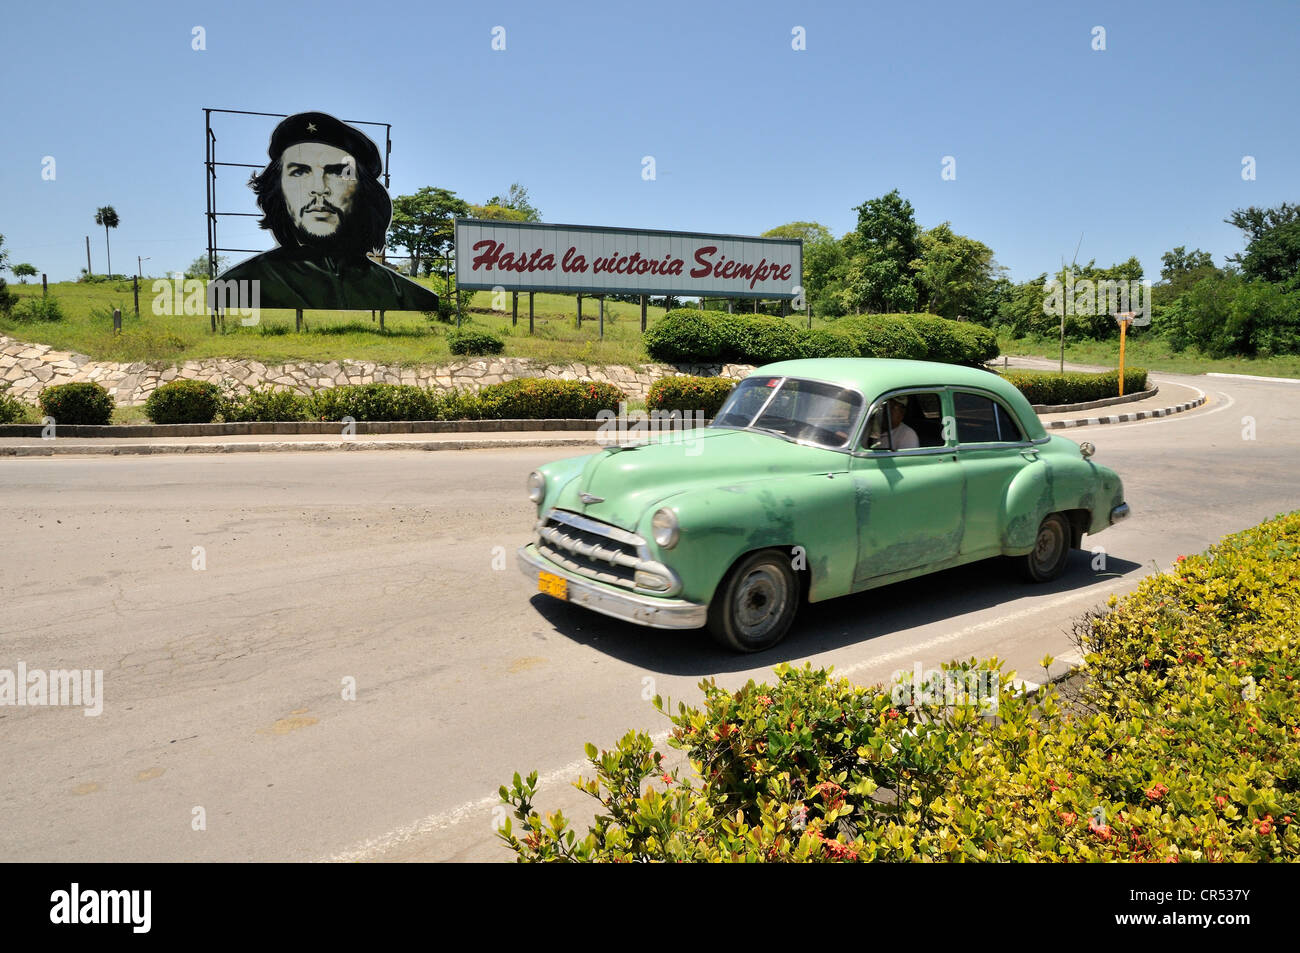 Vintage car en face de la propagande révolutionnaire, 'hasta la victoria siempre', espagnol pour "toujours de l'avant à la victoire" avec Banque D'Images